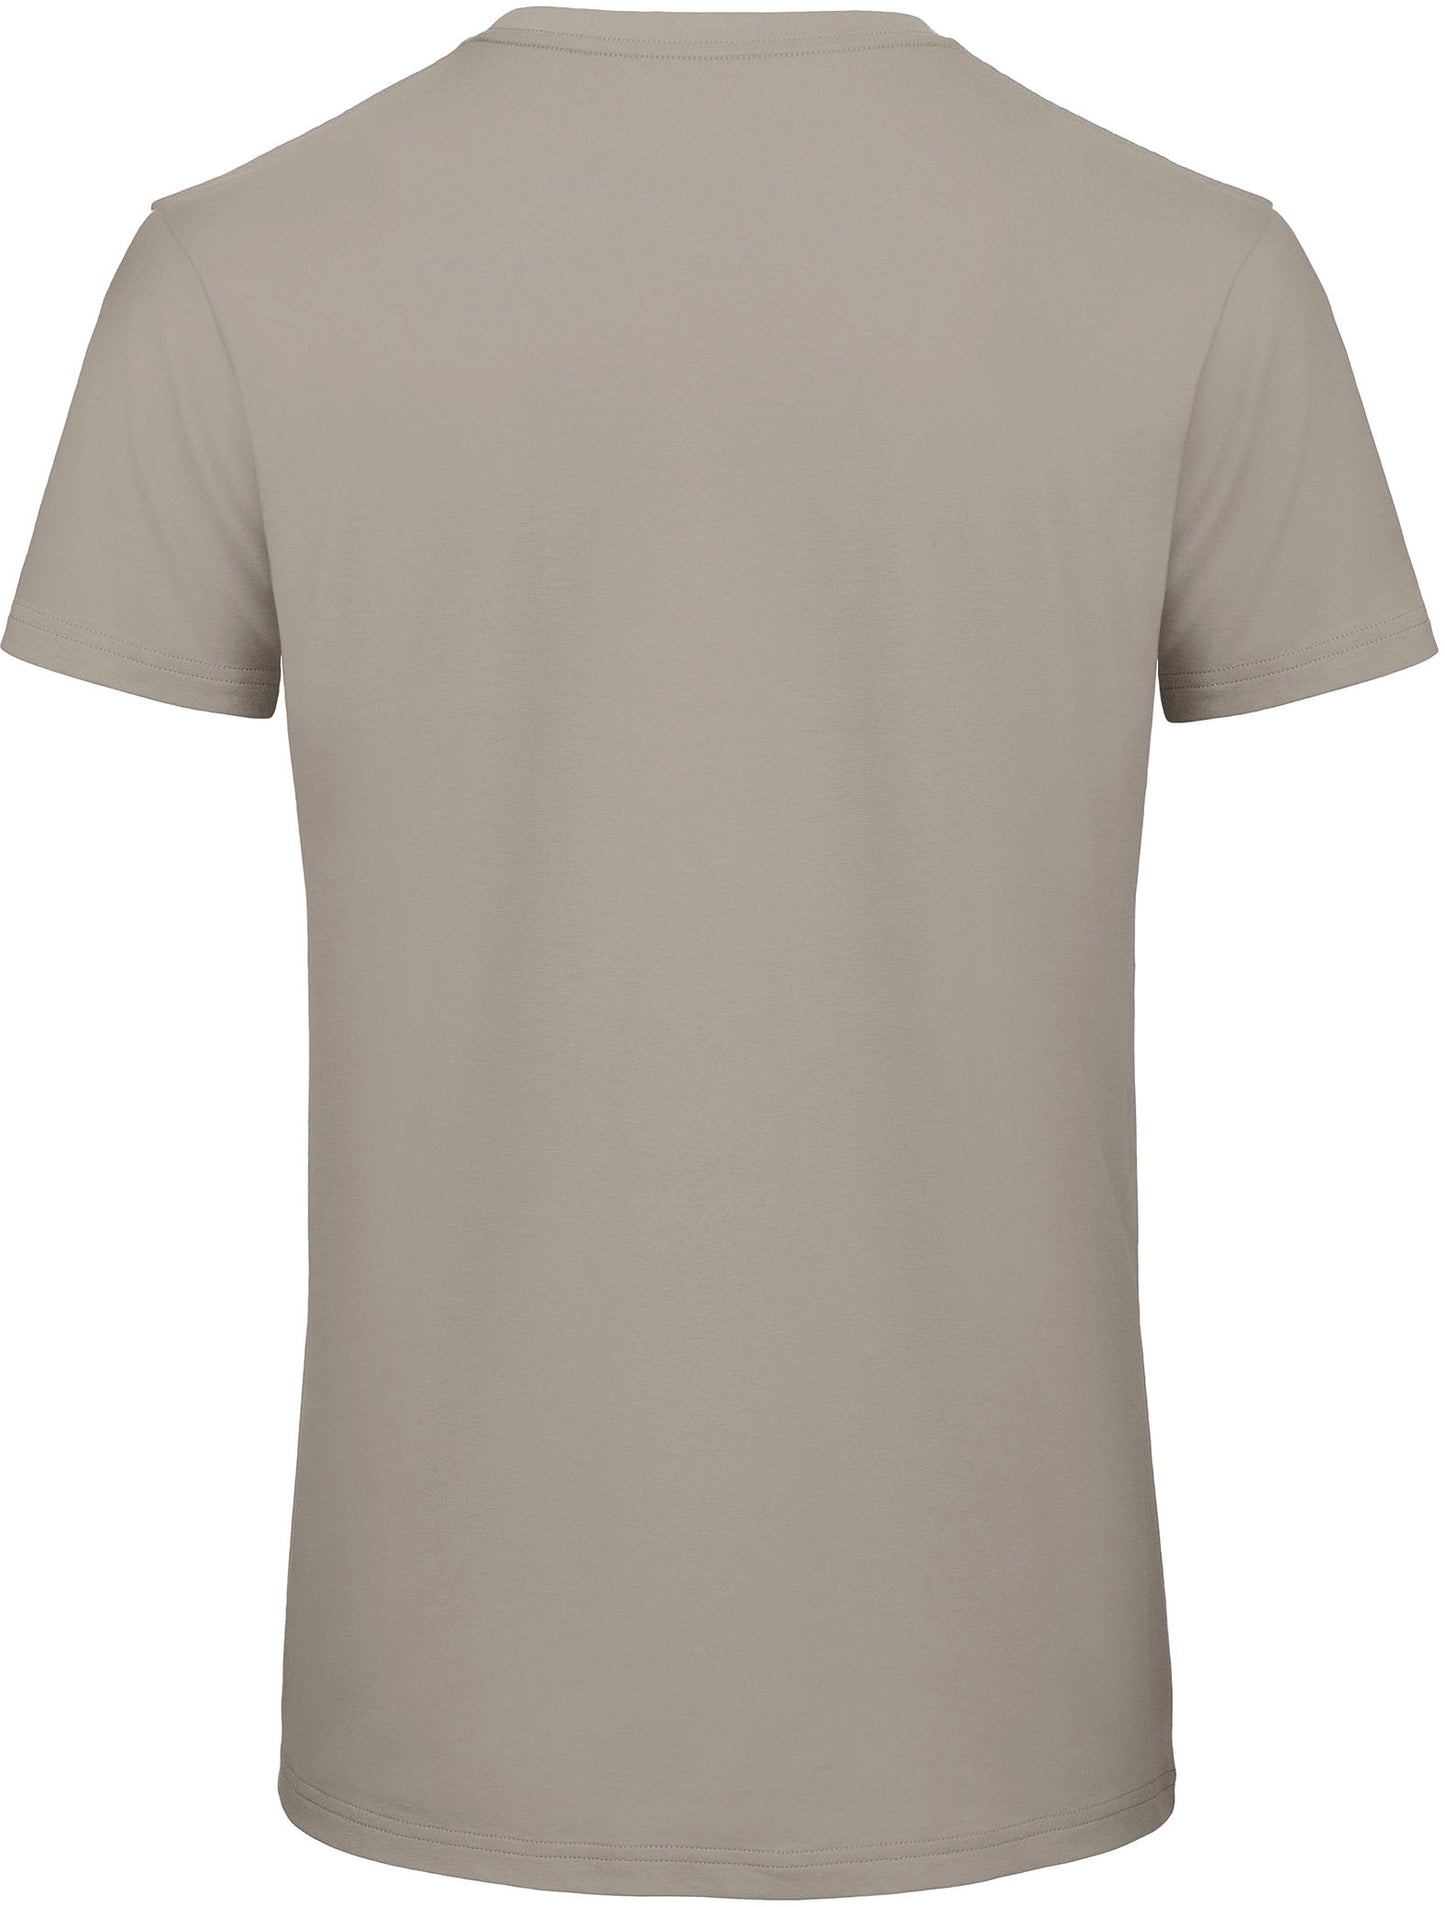 Pack createur - 10 t-shirts manches courtes + impression